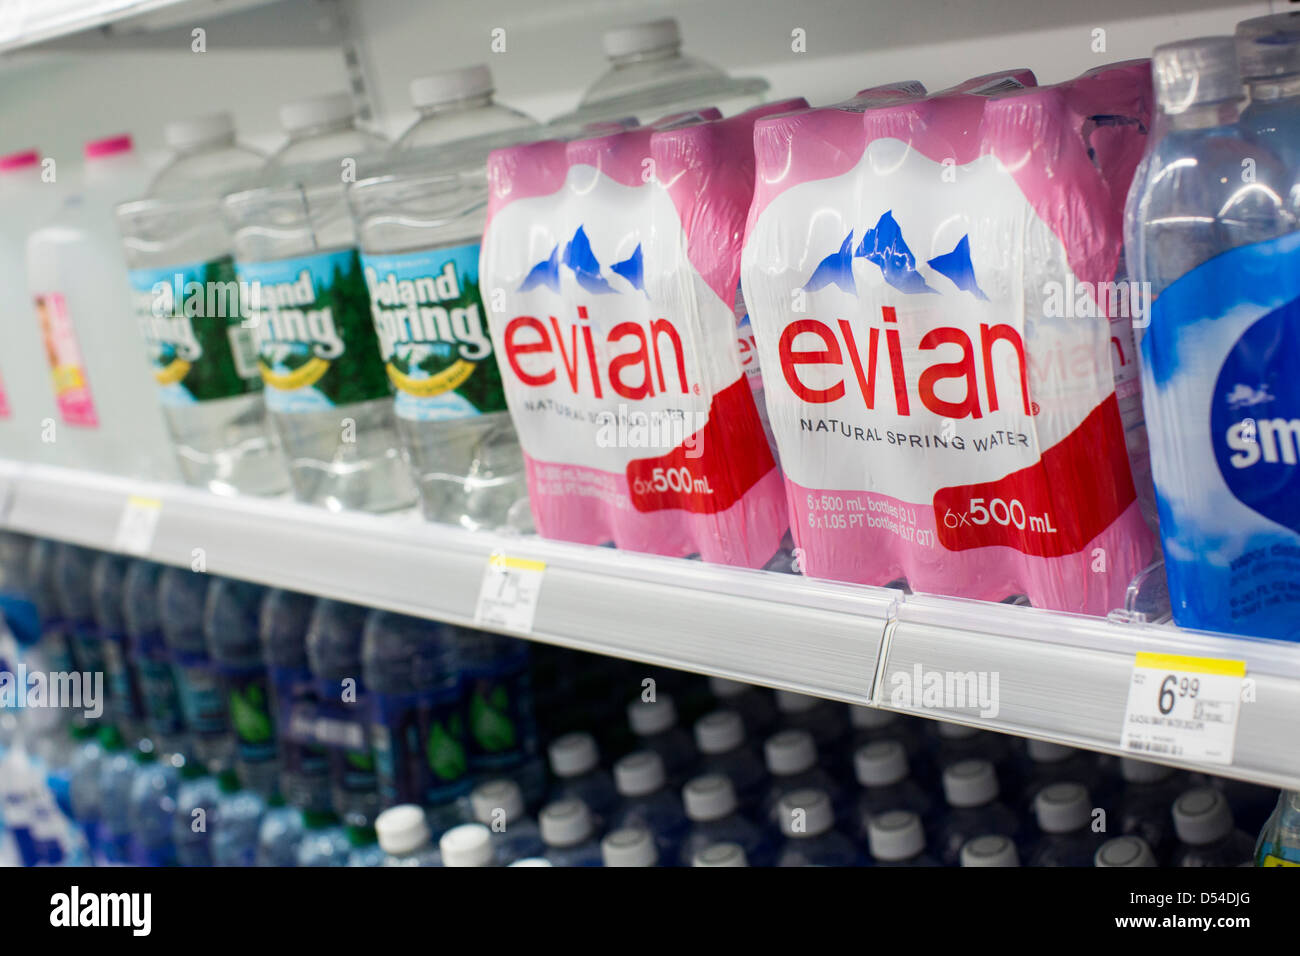 Evian und Poland Spring Mineralwasser auf dem Display an einem Walgreens Flagship-Store. Stockfoto